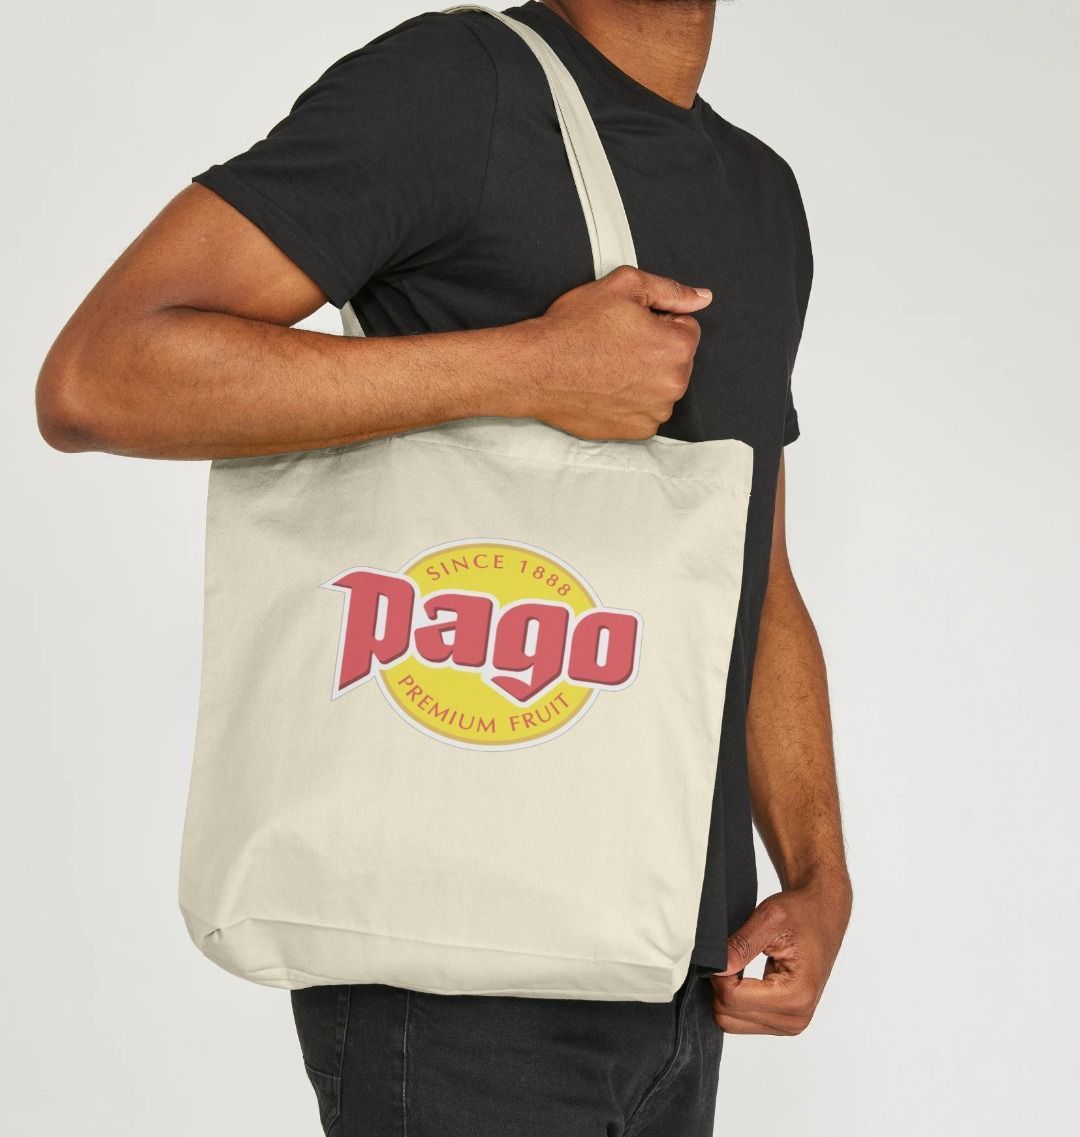 Pago Tote Bag - Pago Premium Fruit Juice Store